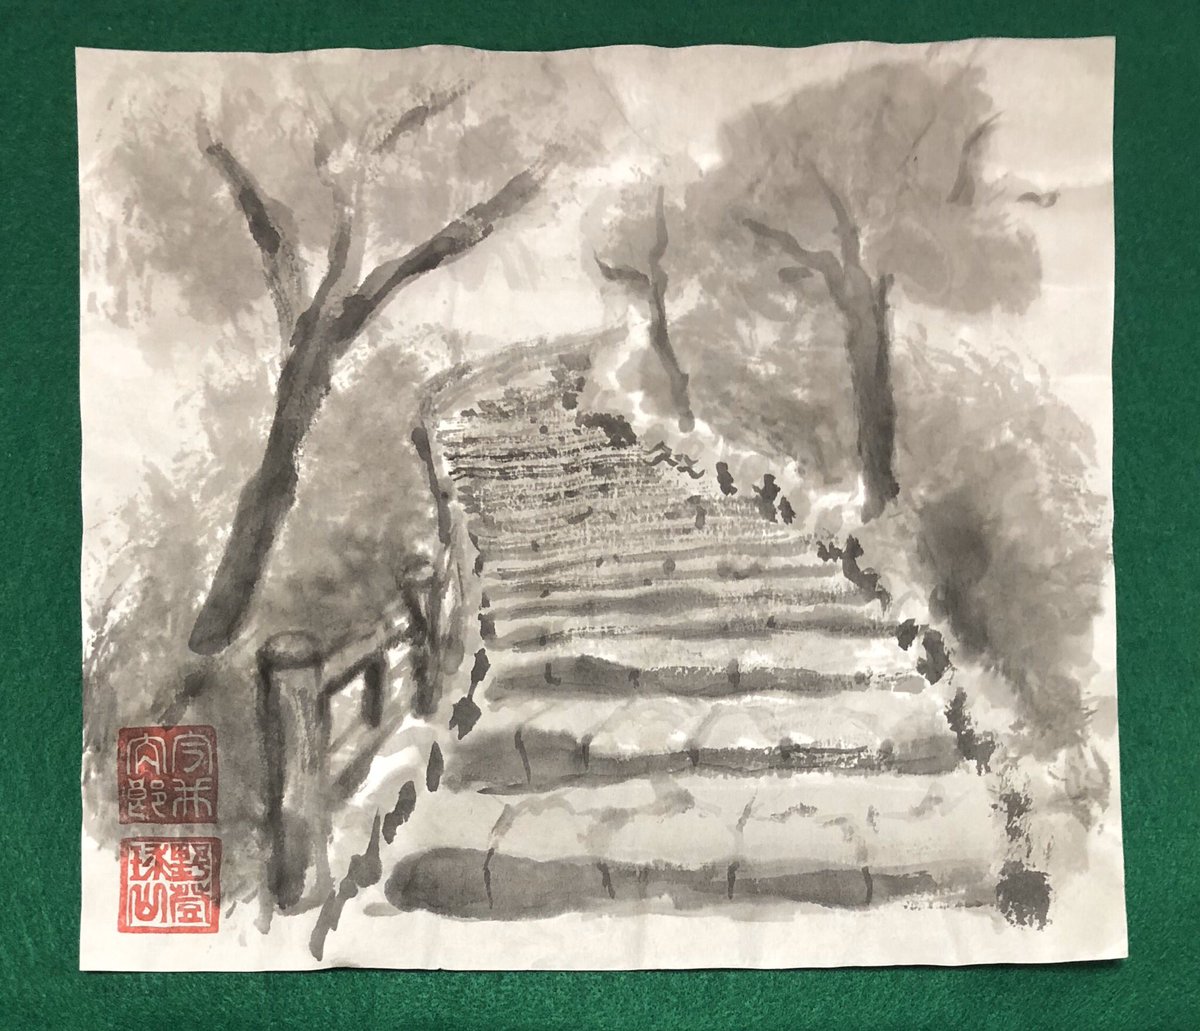 野登球山 スポーツ絵画 水墨画家 Twitterissa 昨年に行った山の頂上へ続く階段 山に行きたい 水墨画 日本画 山 風景画 絵描きの輪 絵描きさんと繋がりたい